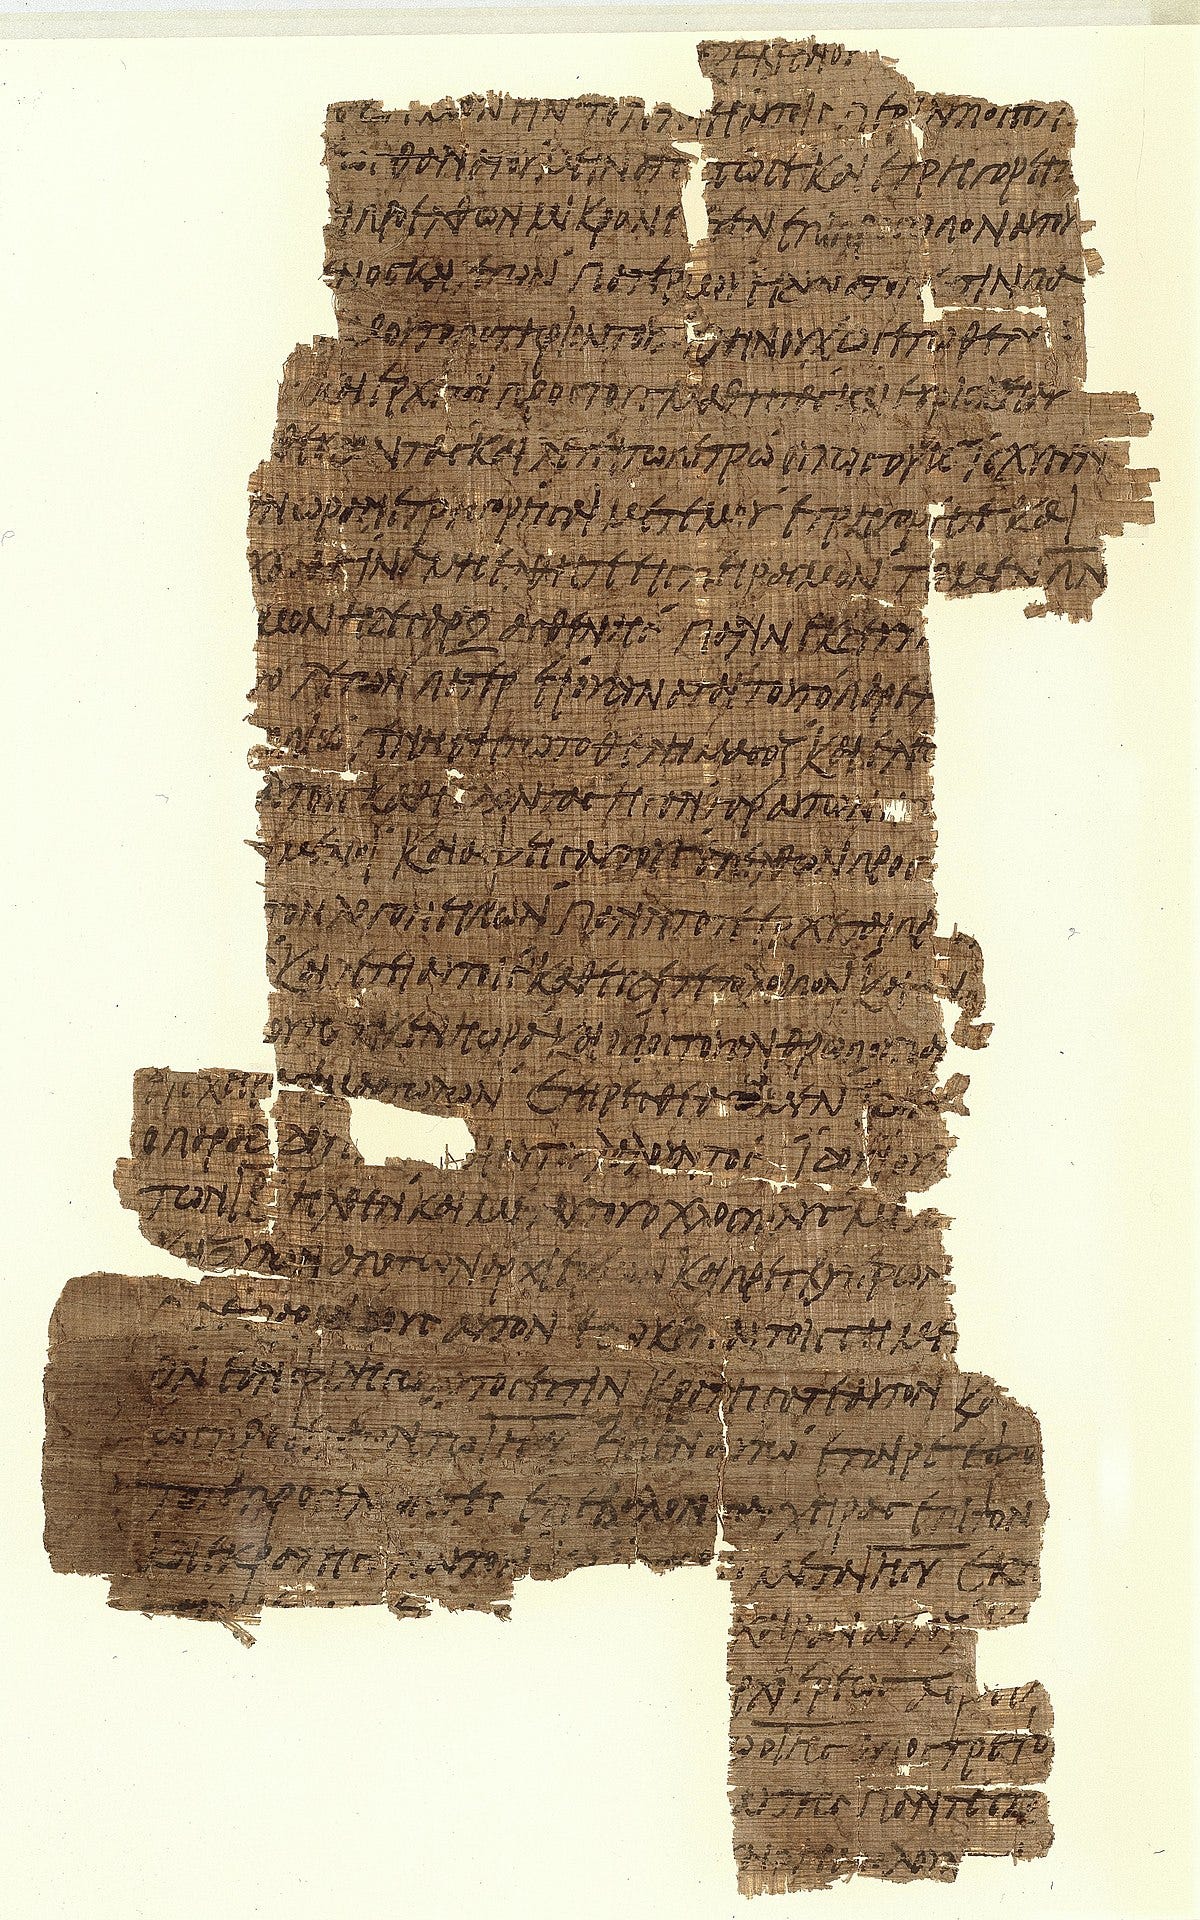 New testament manuscripts - Wikimedia Commons